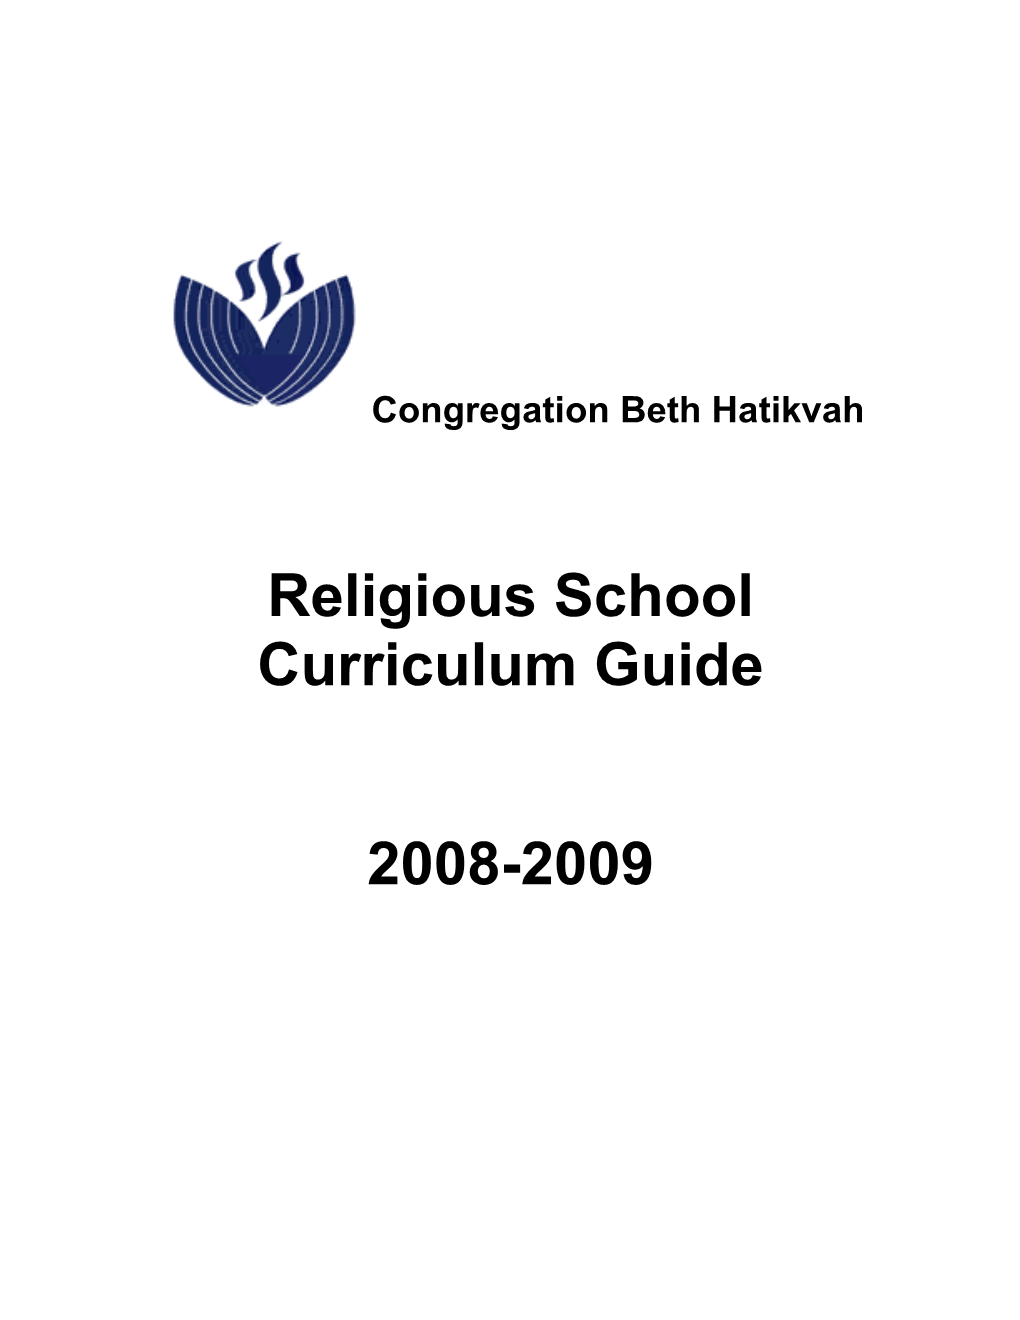 Religious School Curriculum Guide 2008-2009